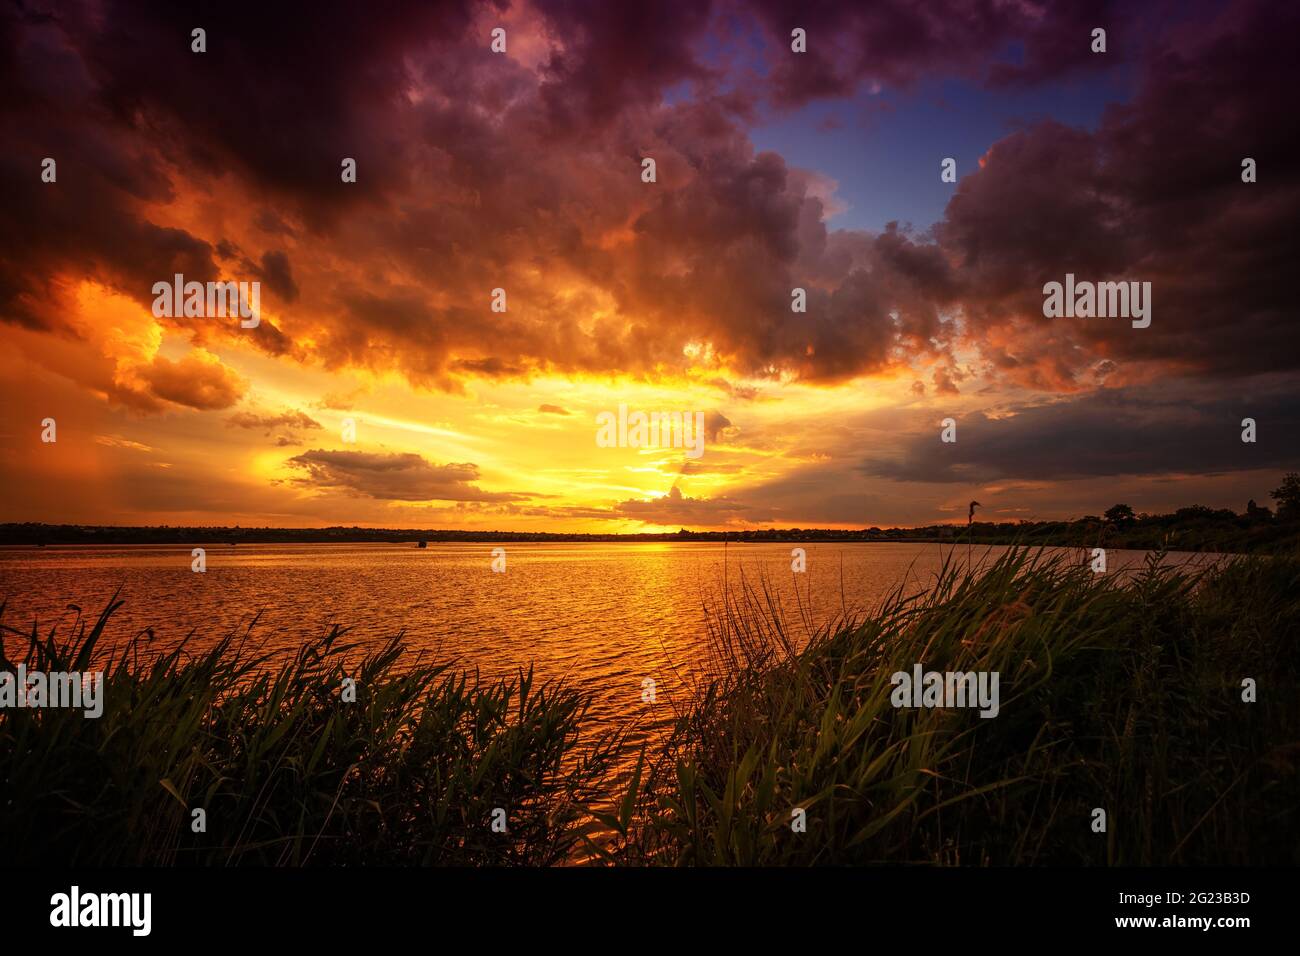 Beautiful landscape with sunset, sunrise on the lake Stock Photo